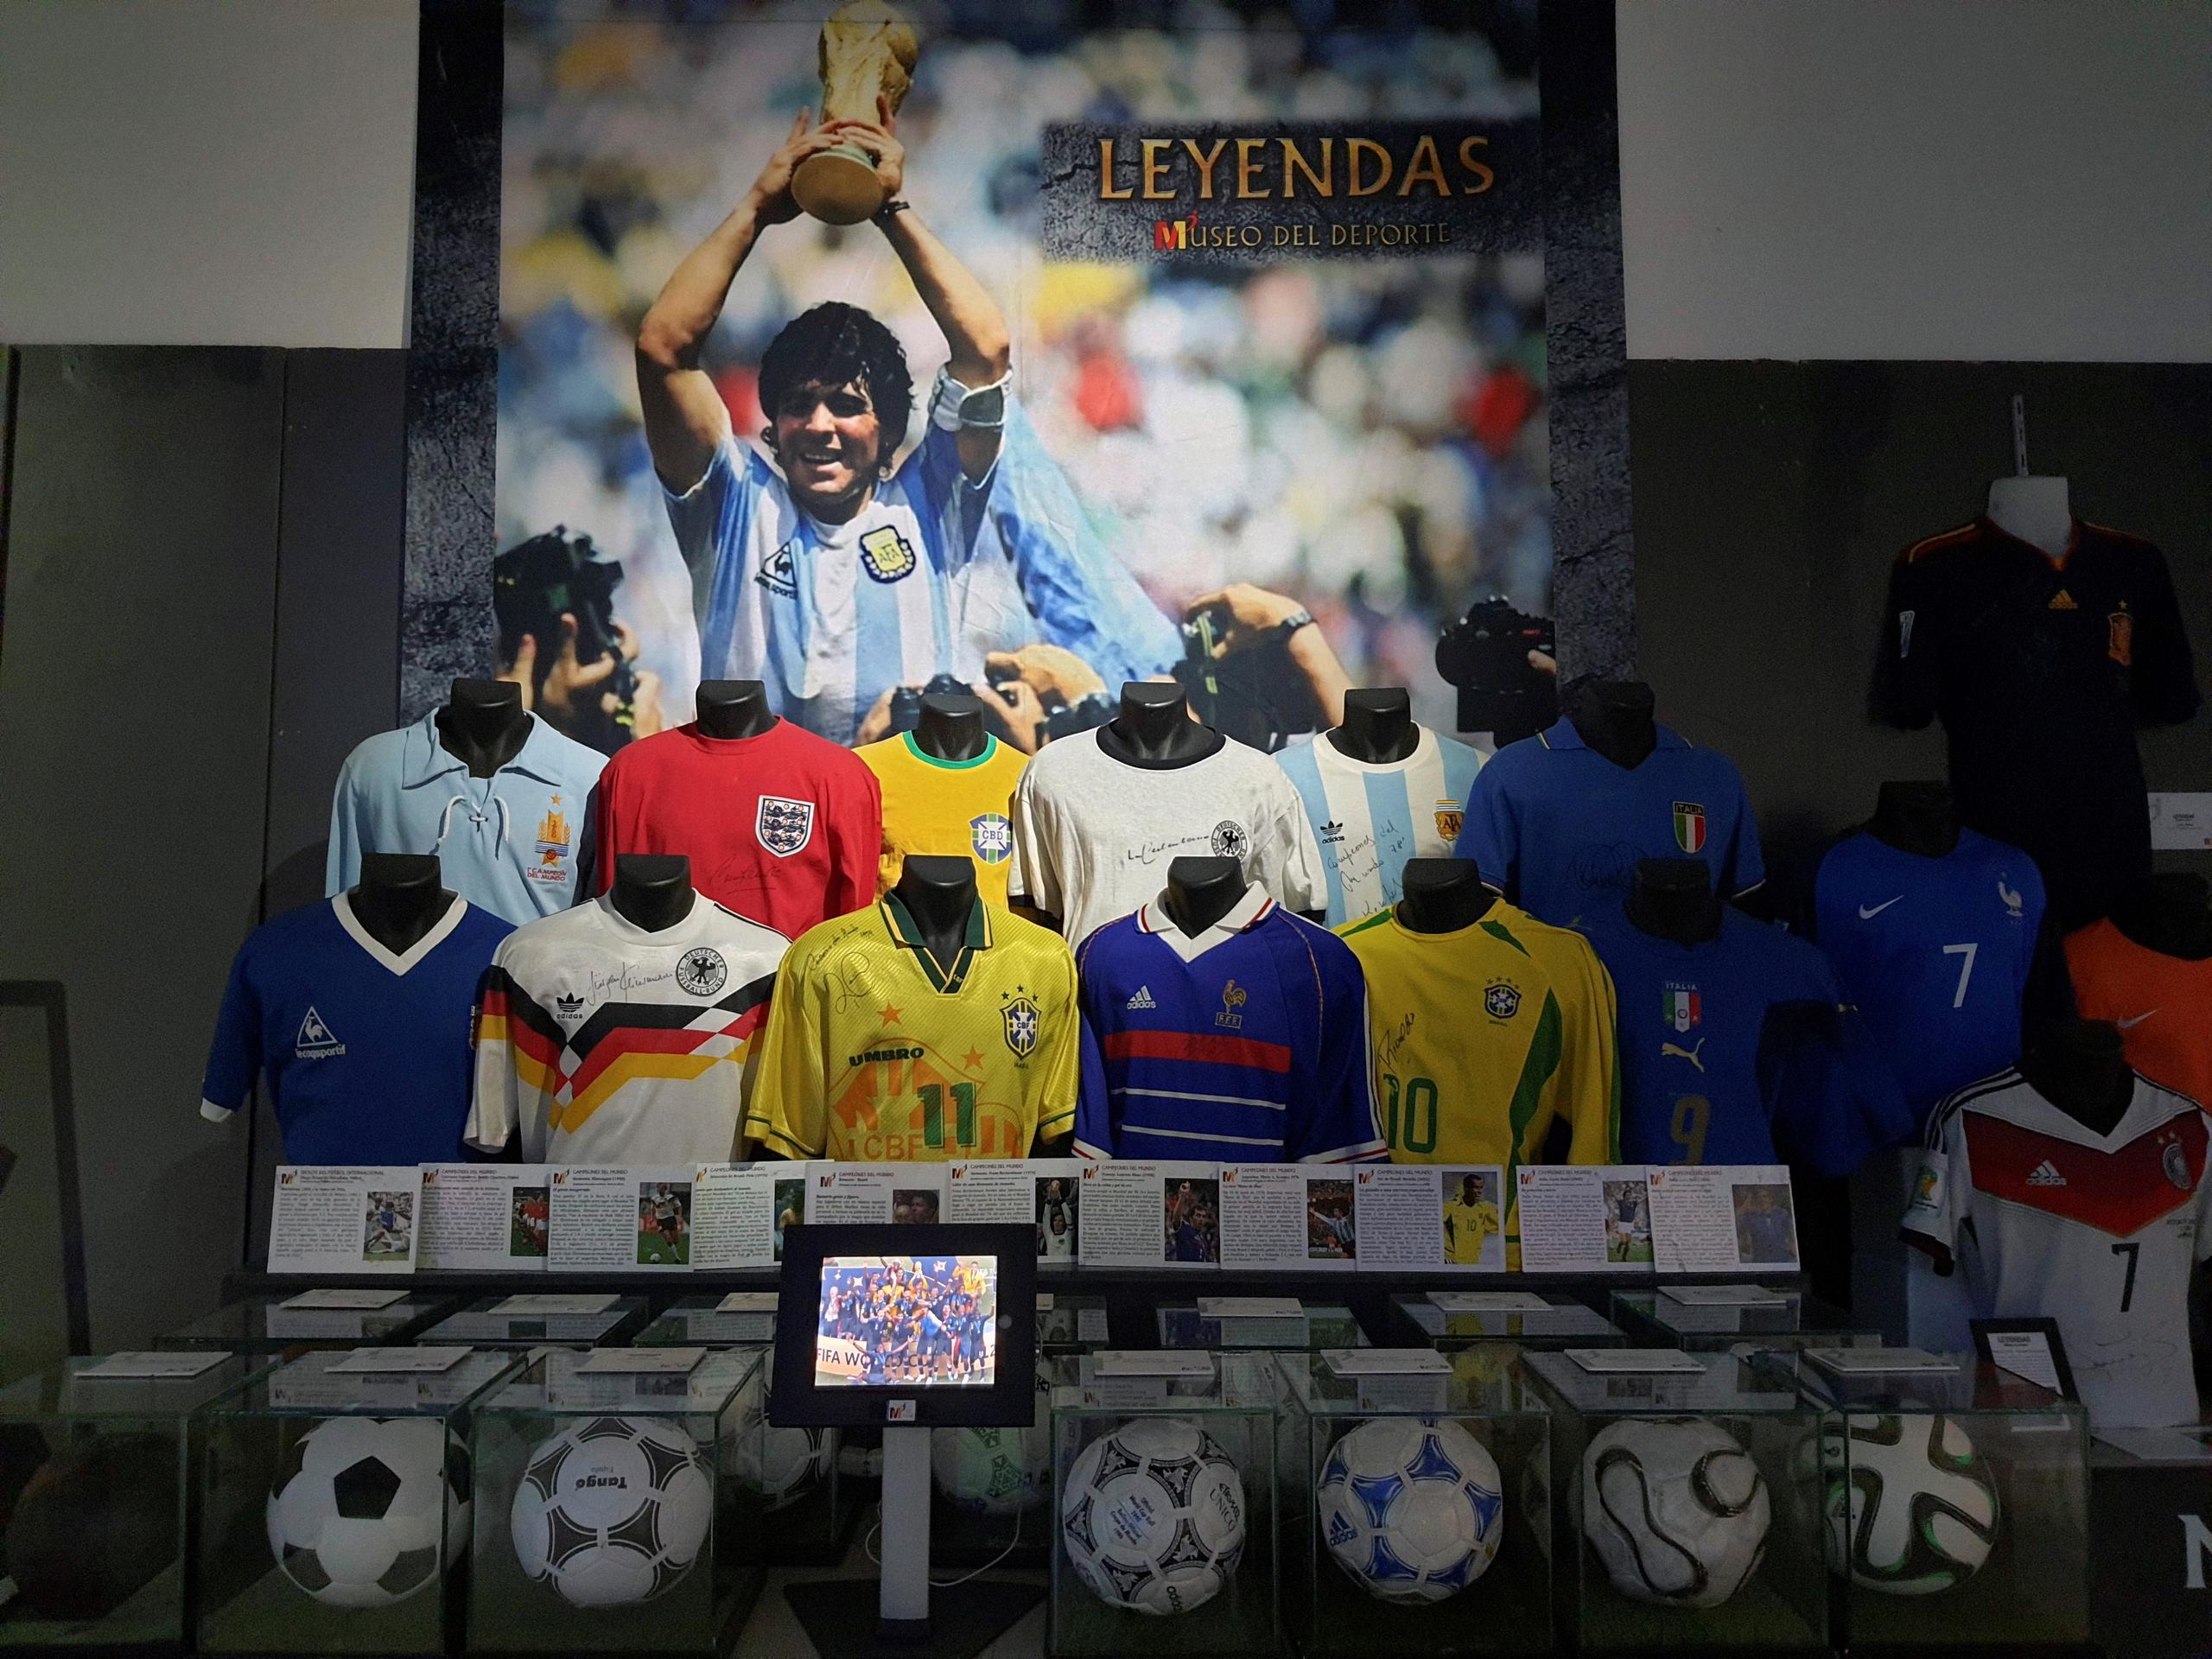 Una foto del jugador de Diego Armando Maradona junto a las camisetas de los mejores jugadores del mundo está expuesta dentro de la muestra "Leyendas del Deporte" en un centro comercial madrileño.
